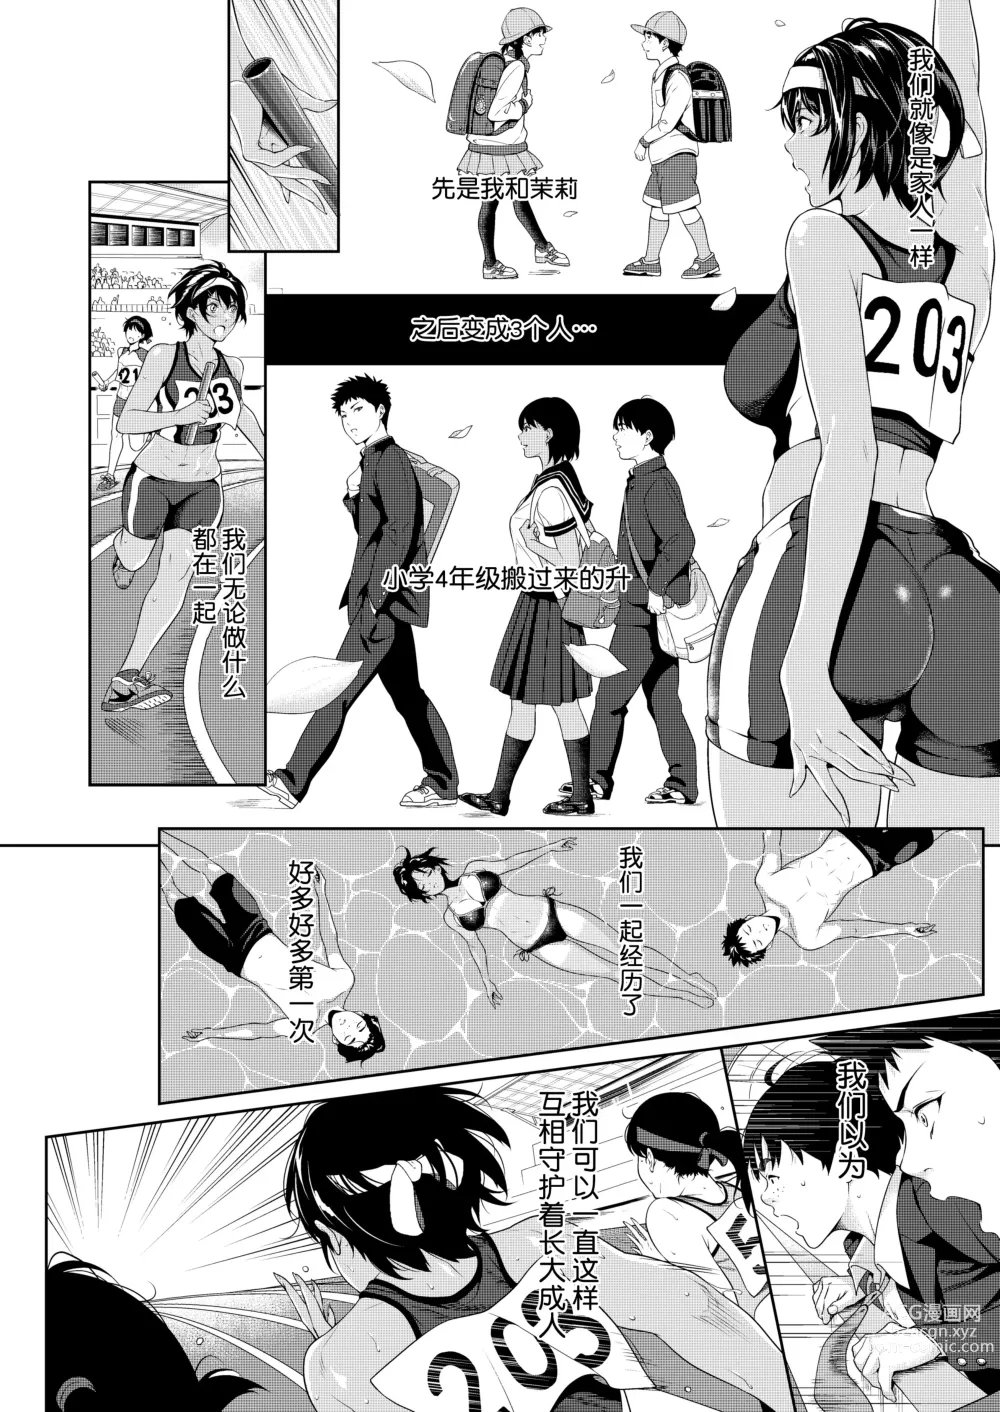 Page 6 of manga 僕たちのゴールライン